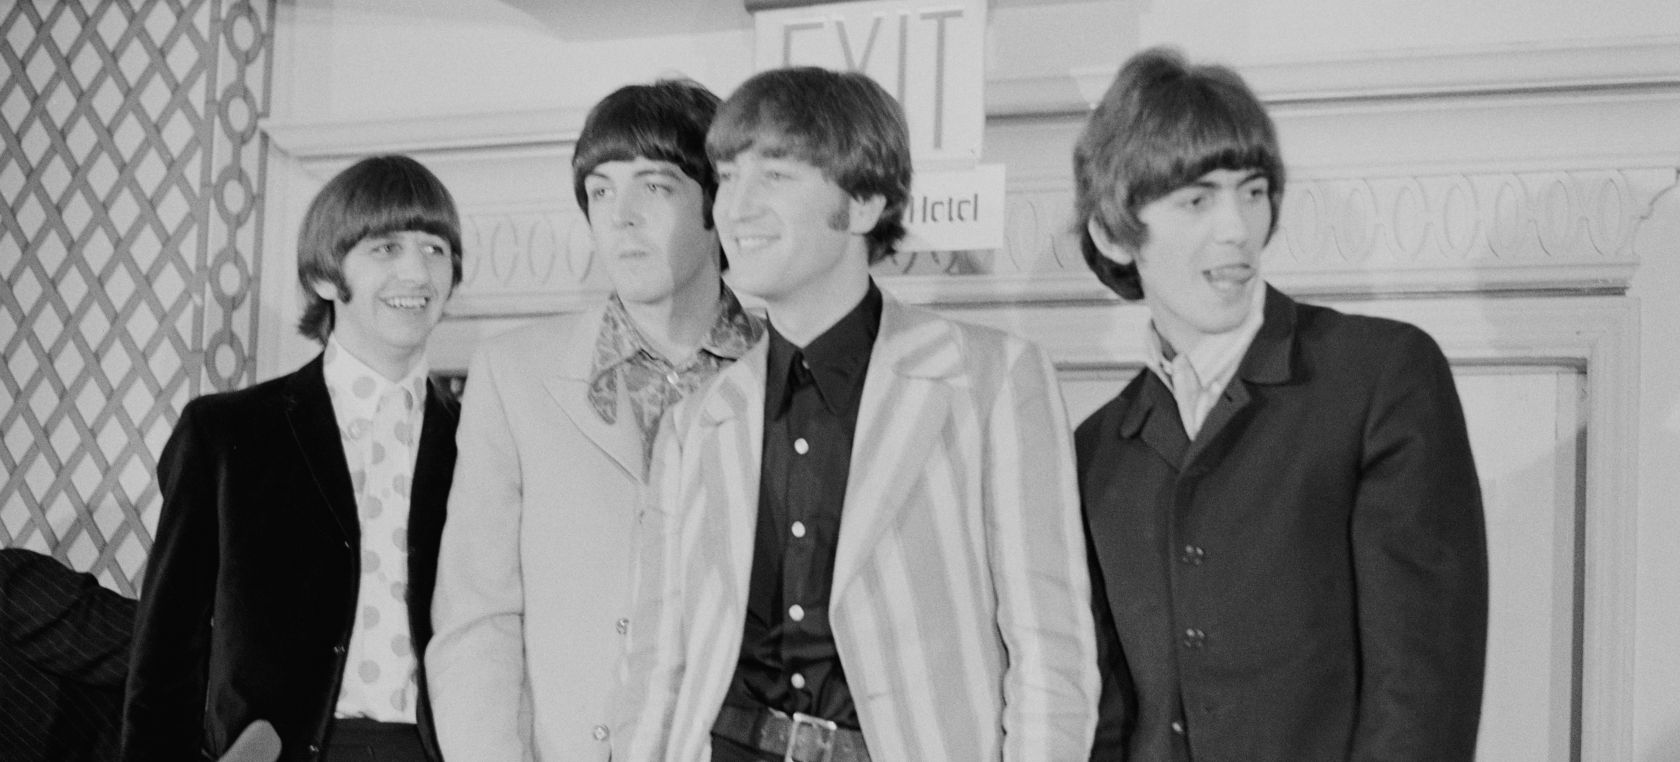 Se estrena el trailer del documental de la hija de Paul McCartney sobre los estudios Abbey Road